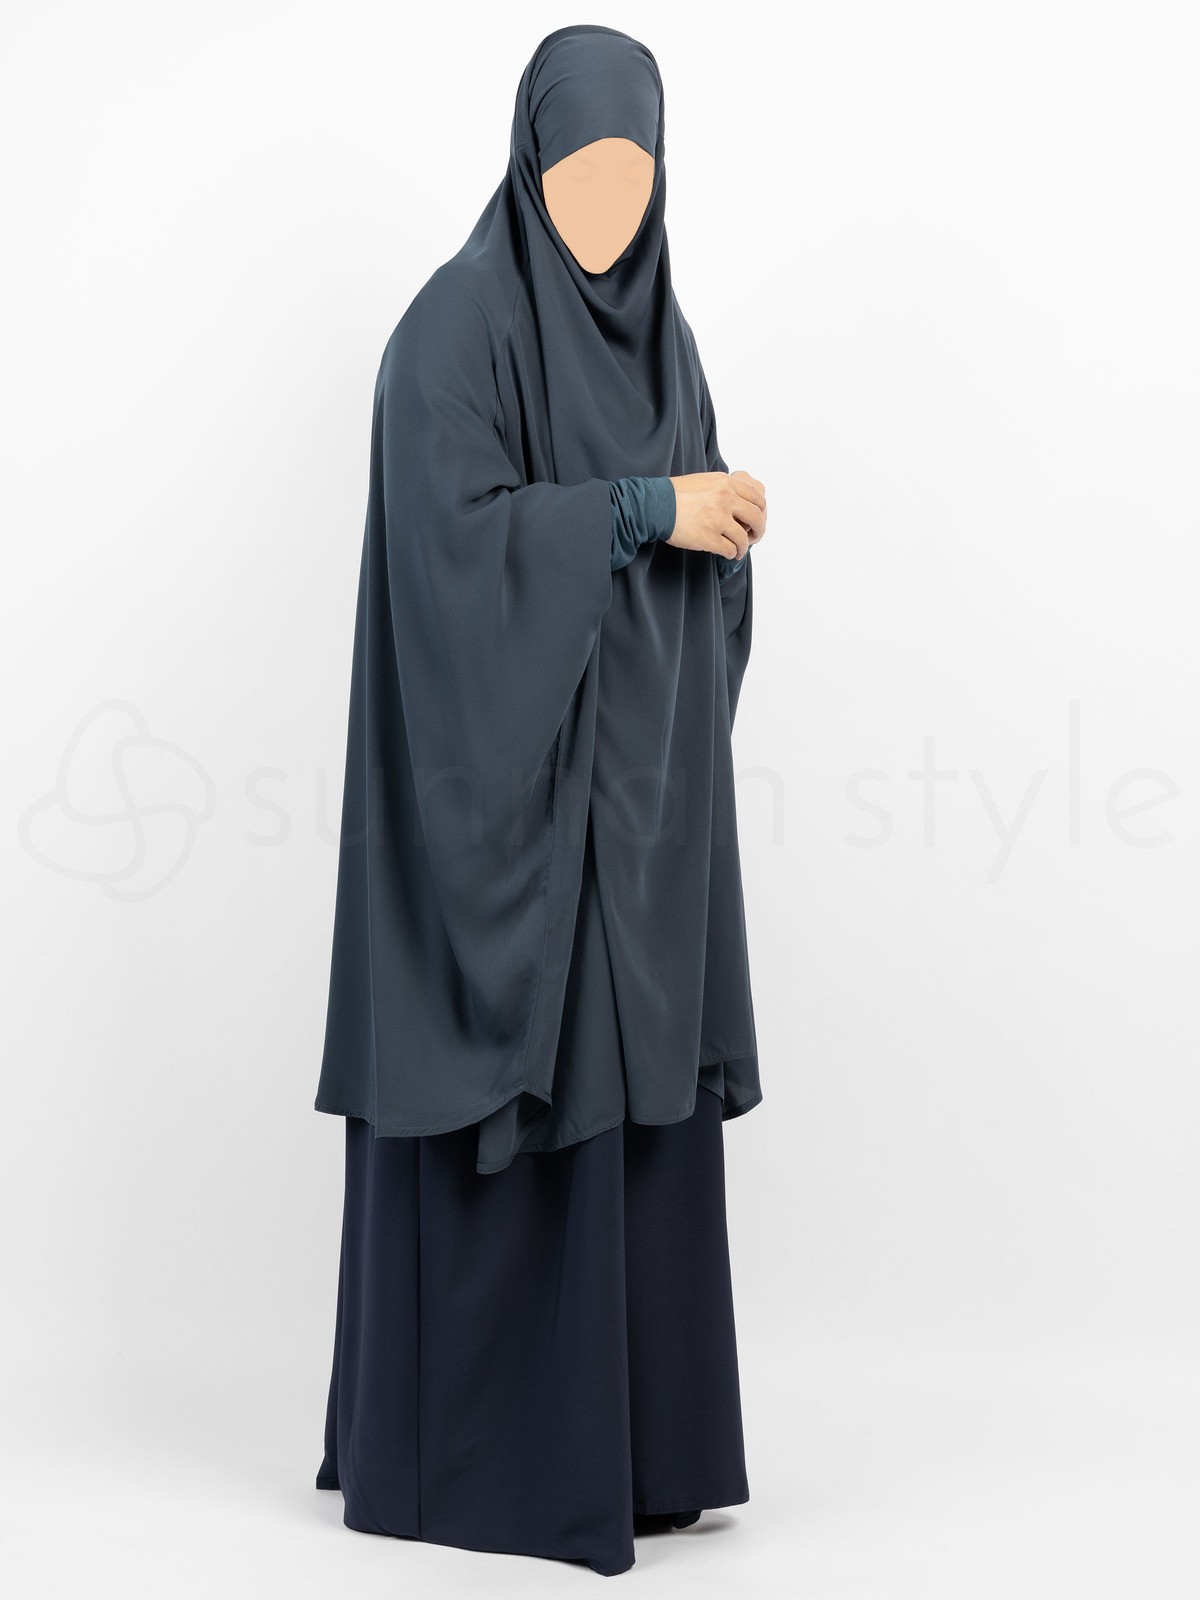 Sunnah Style - Plain Jilbab Top - Knee Length (Slate)